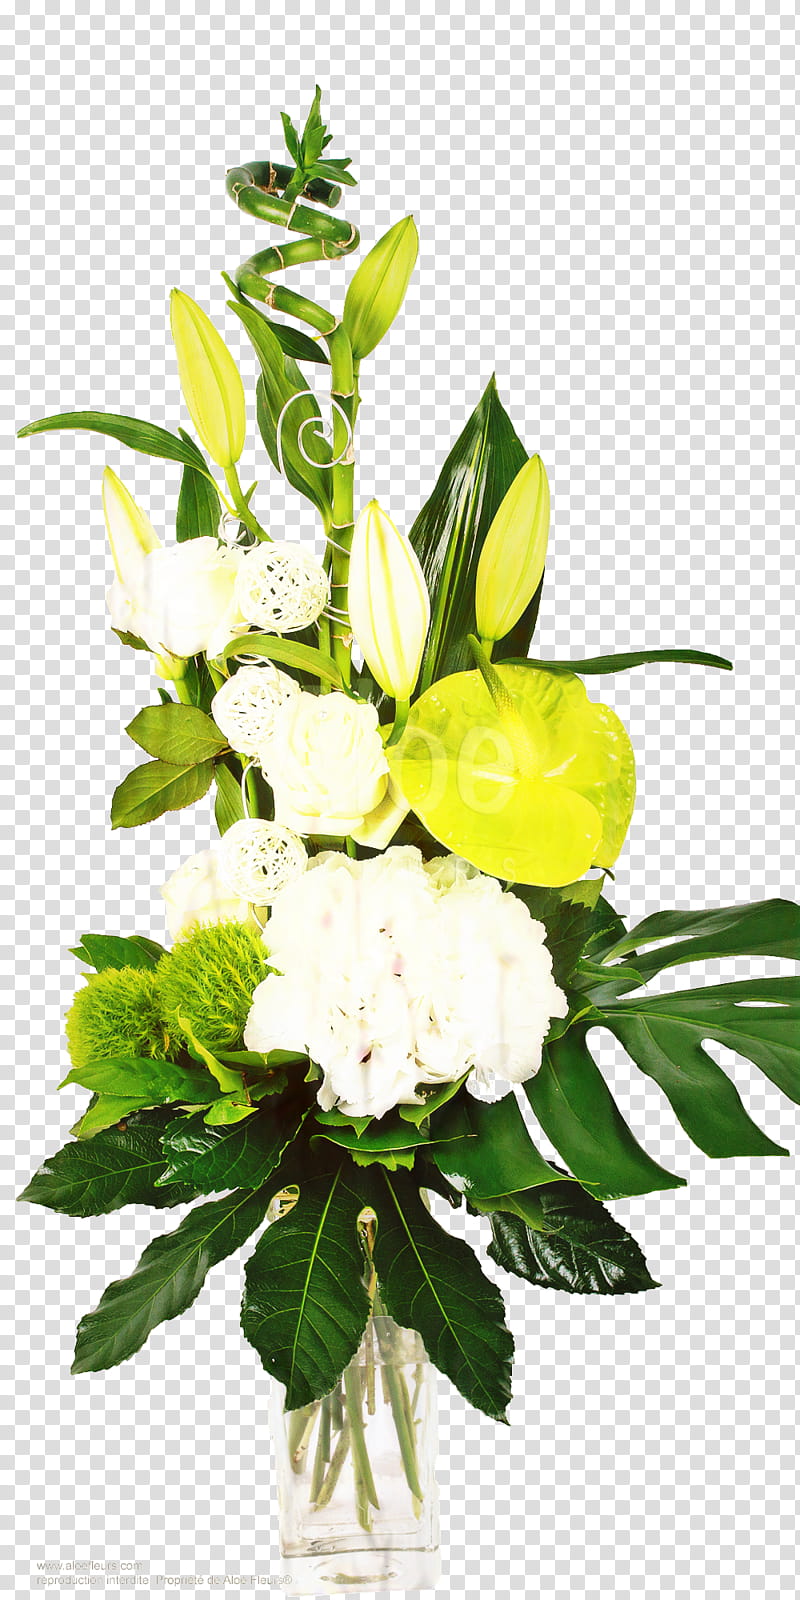 Green Leaf, Floral Design, Flower Bouquet, Cut Flowers, Aloe Flowers Forbach, Composition Florale, Florist, Artificial Flower transparent background PNG clipart